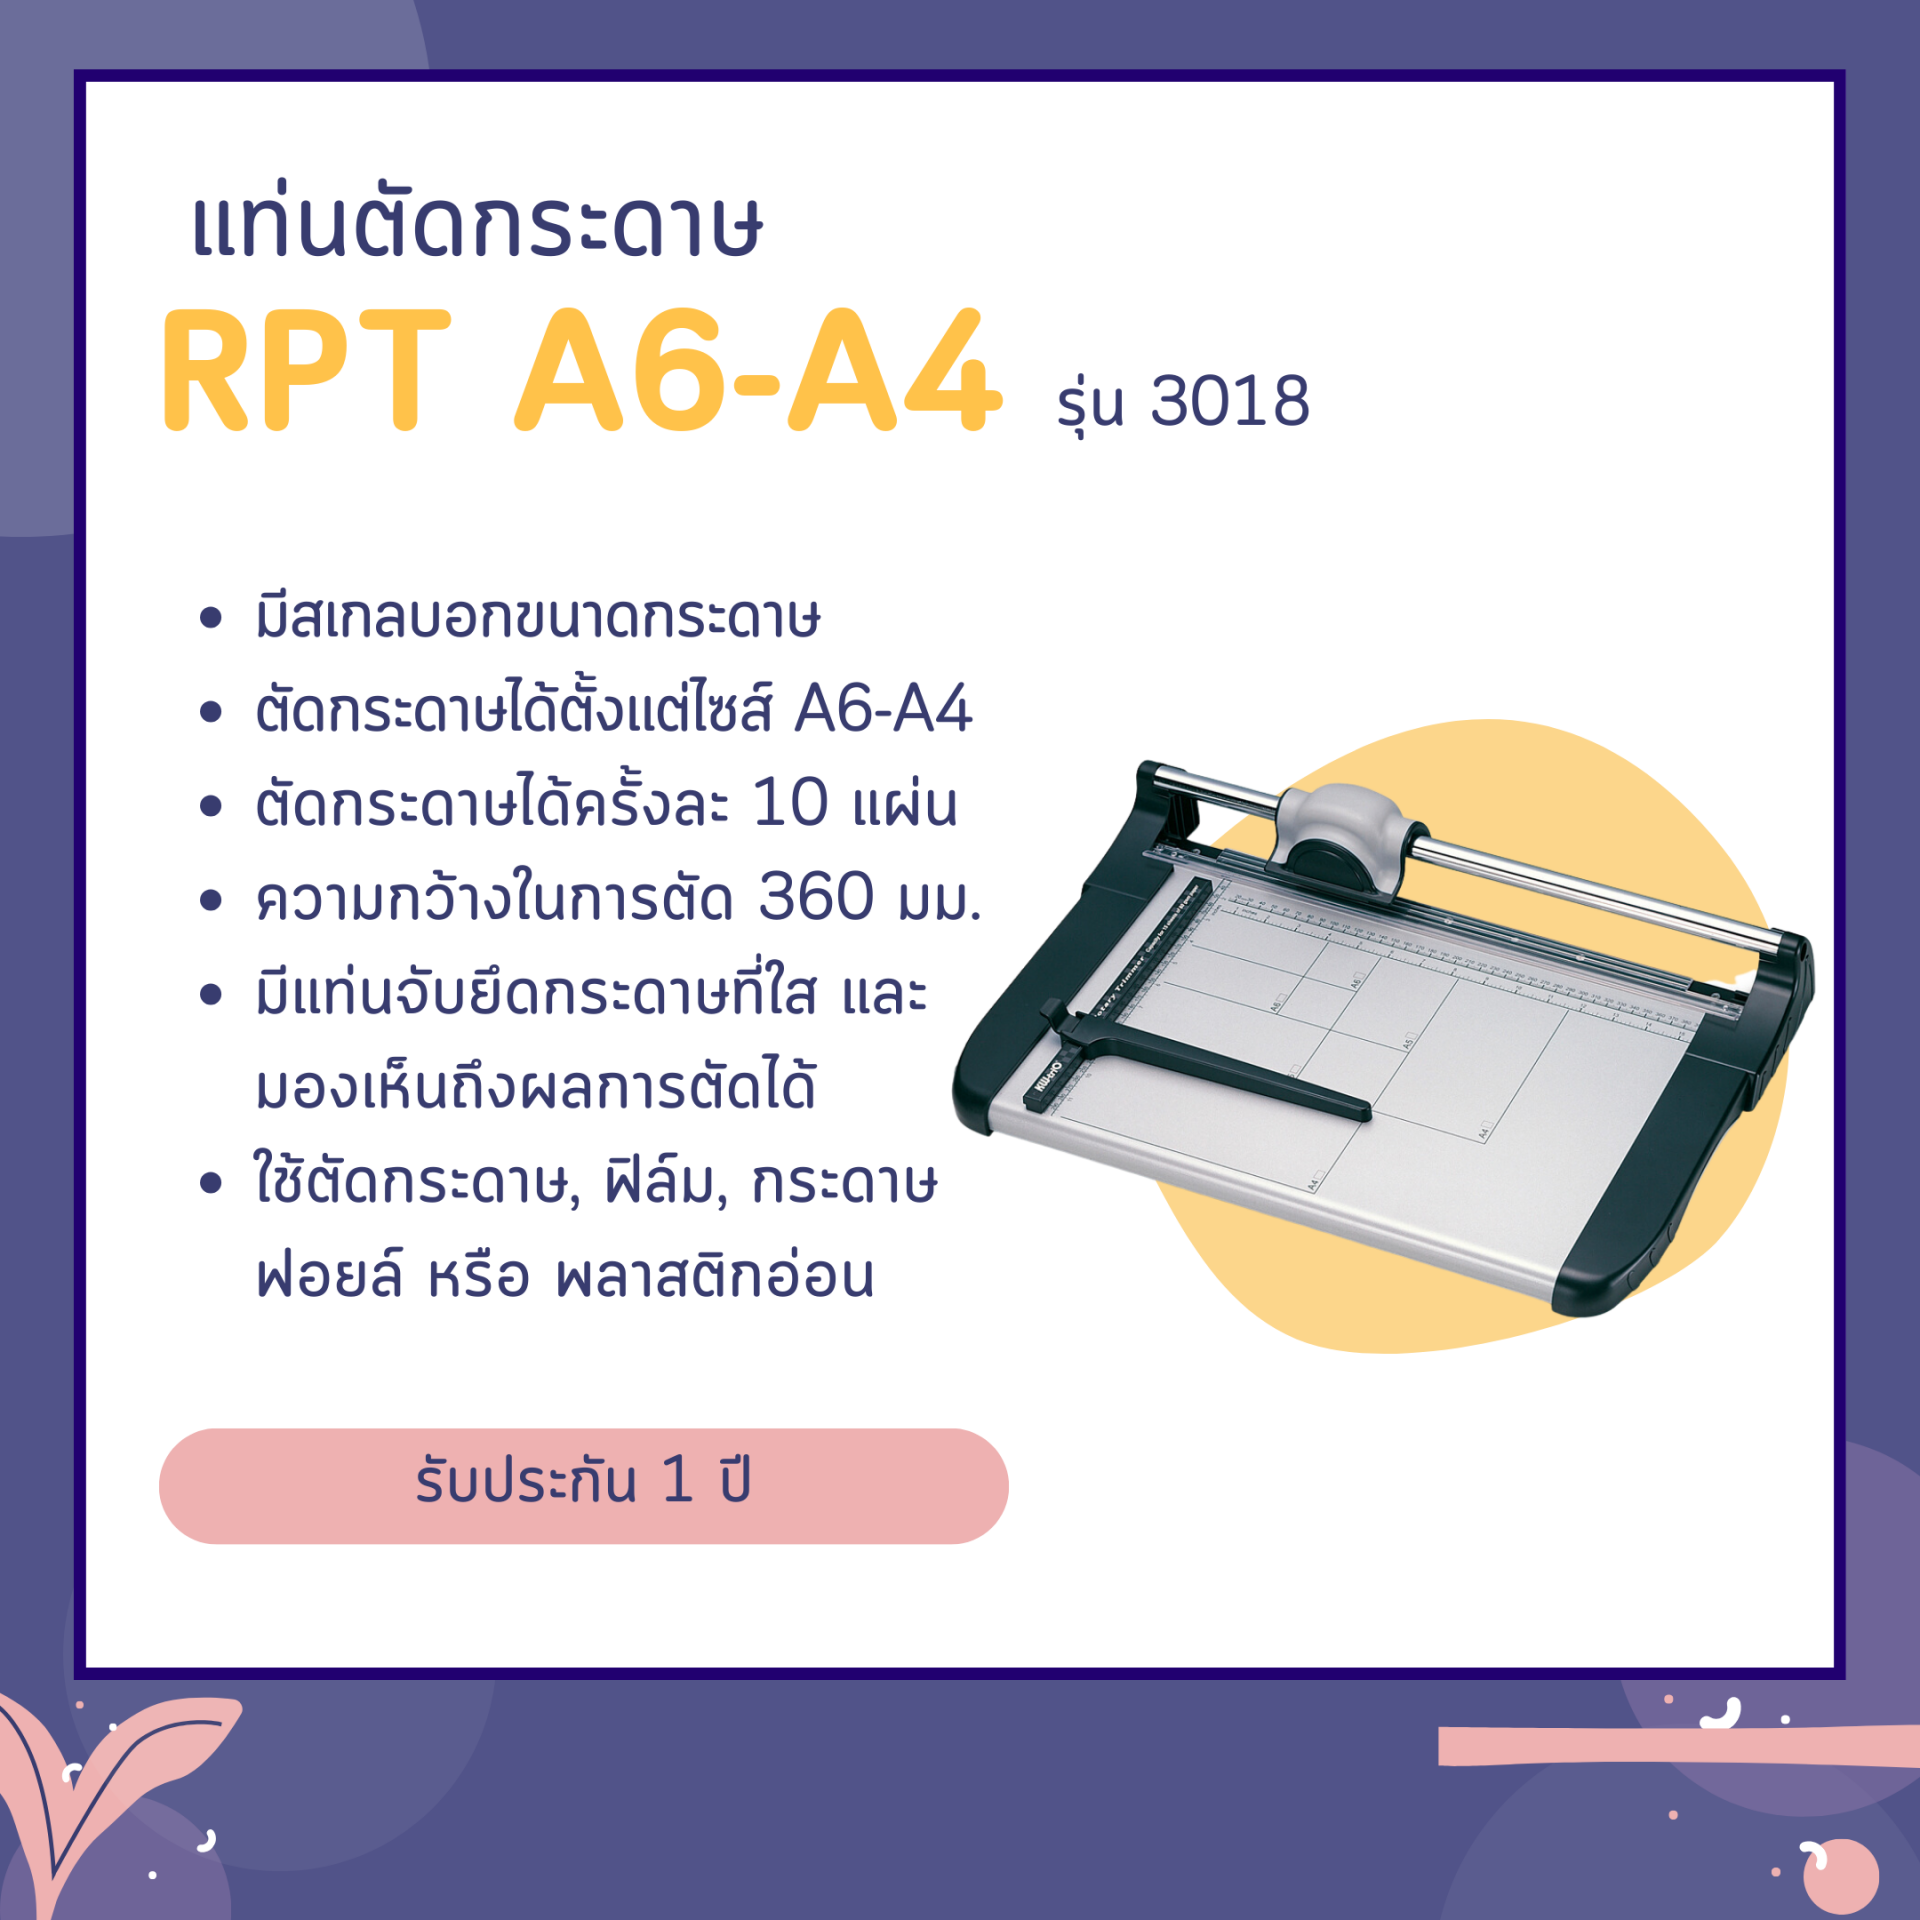 แท่นตัดกระดาษ RPT A6 - A4 รุ่น 3018 (13018) (ตัดได้ตั้งแต่ Size A6 - A4)